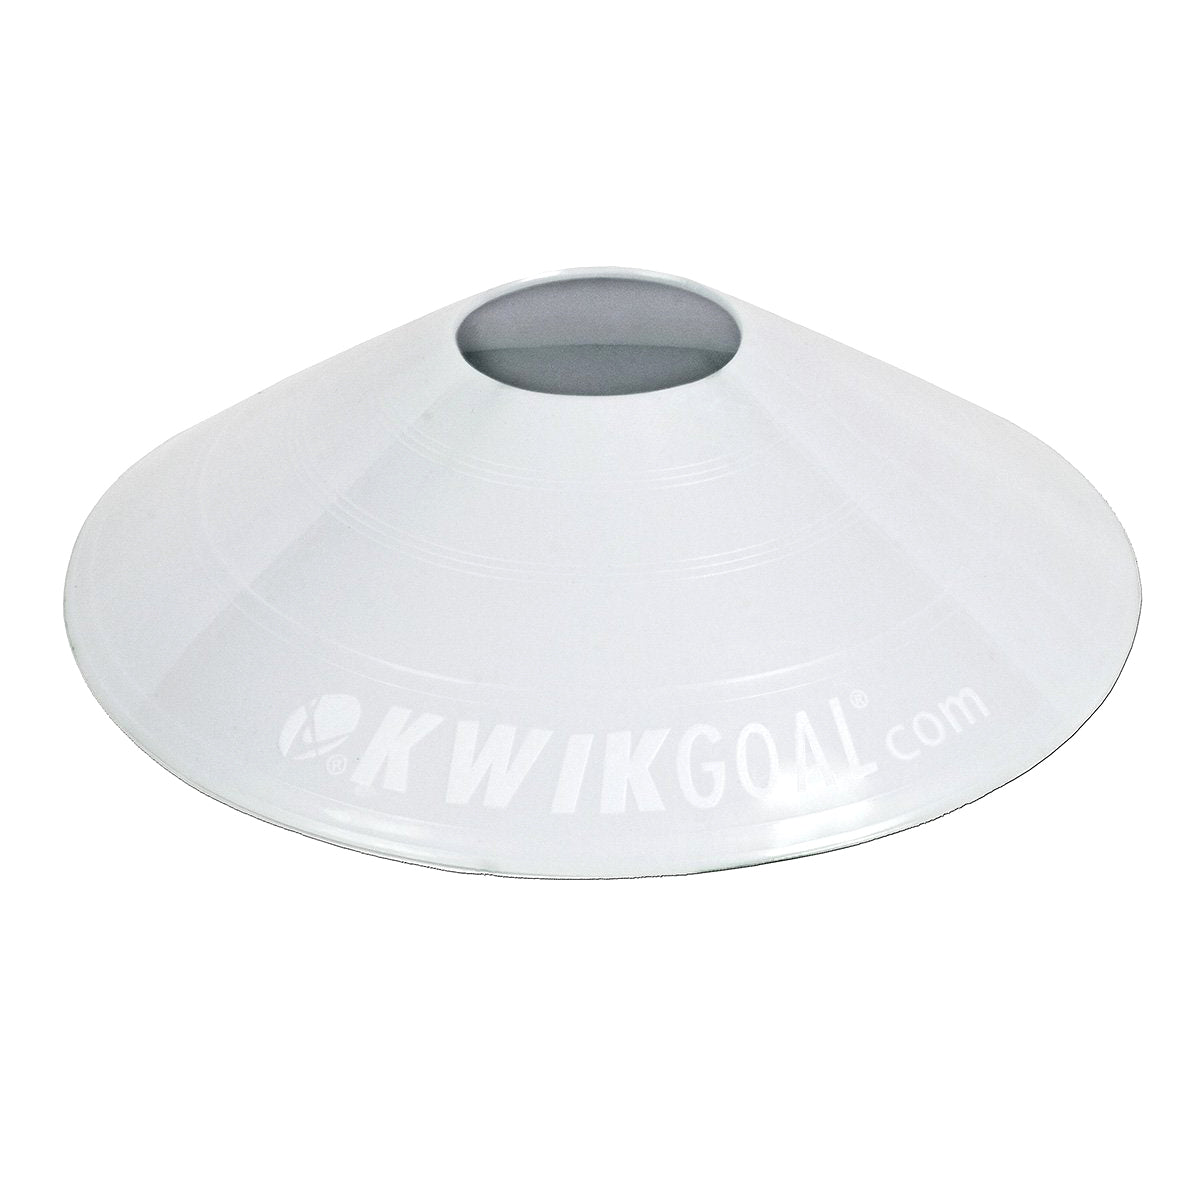 Kwikgoal Small Disc Cones Soccer Coaching Equipment | 6A10 Field equipment Kwikgoal 